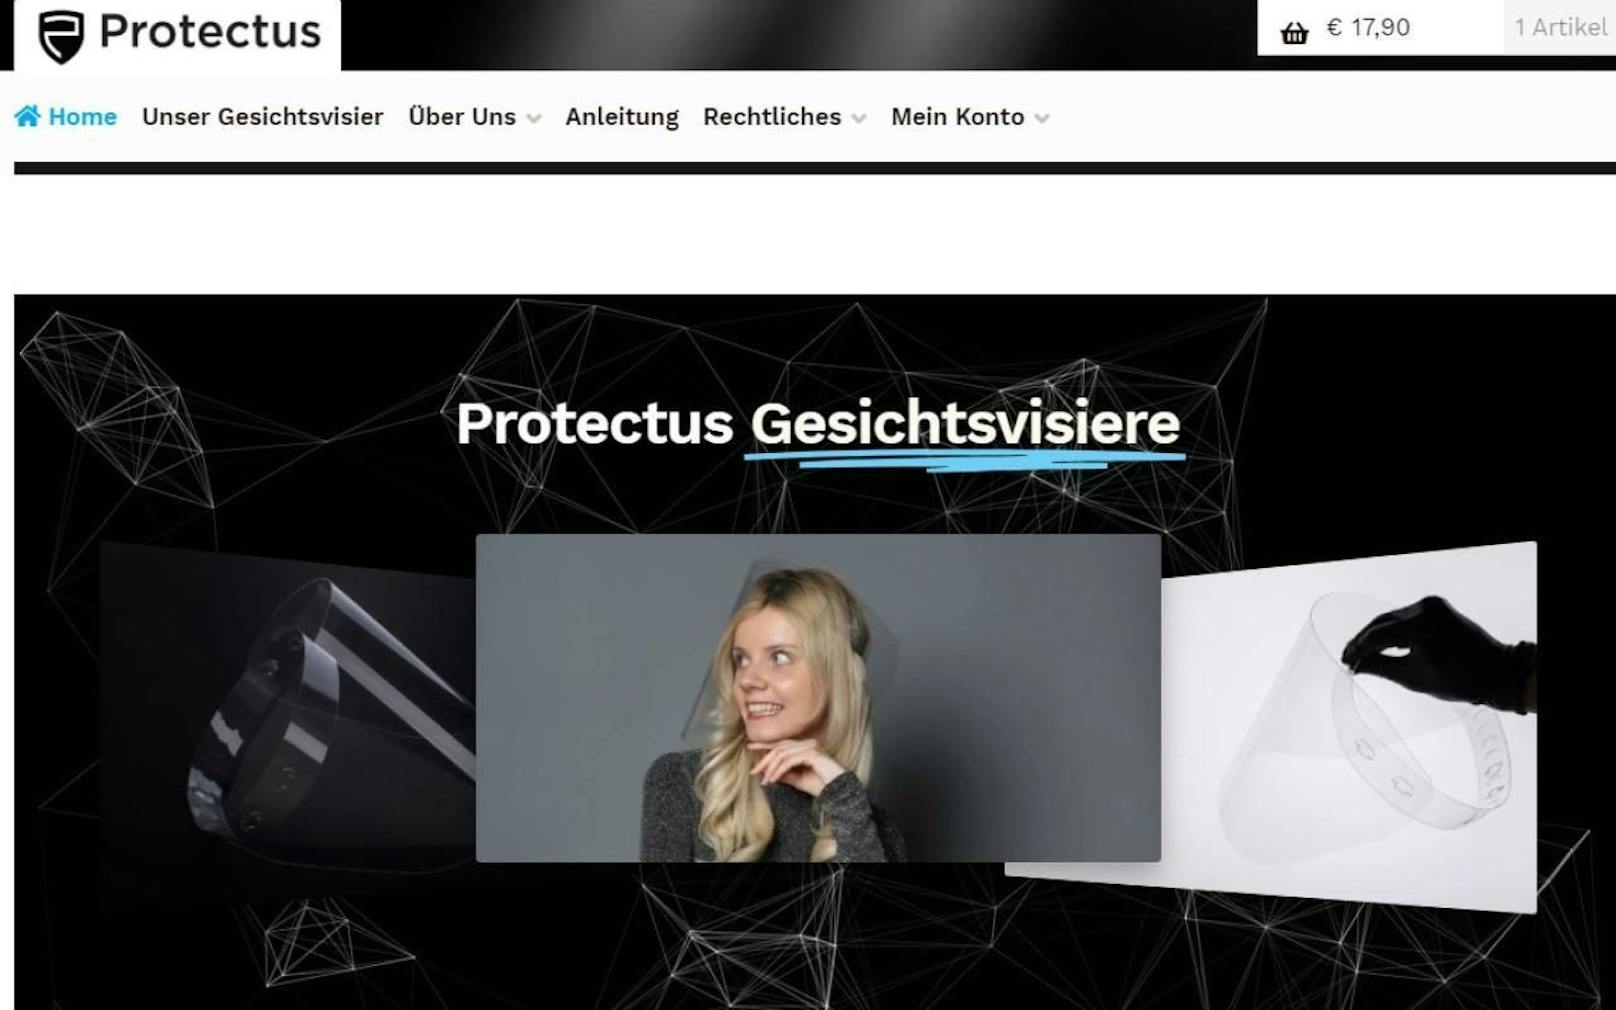 Unter www.protectus.at/ kann man Kerns Spritzschutz kaufen.